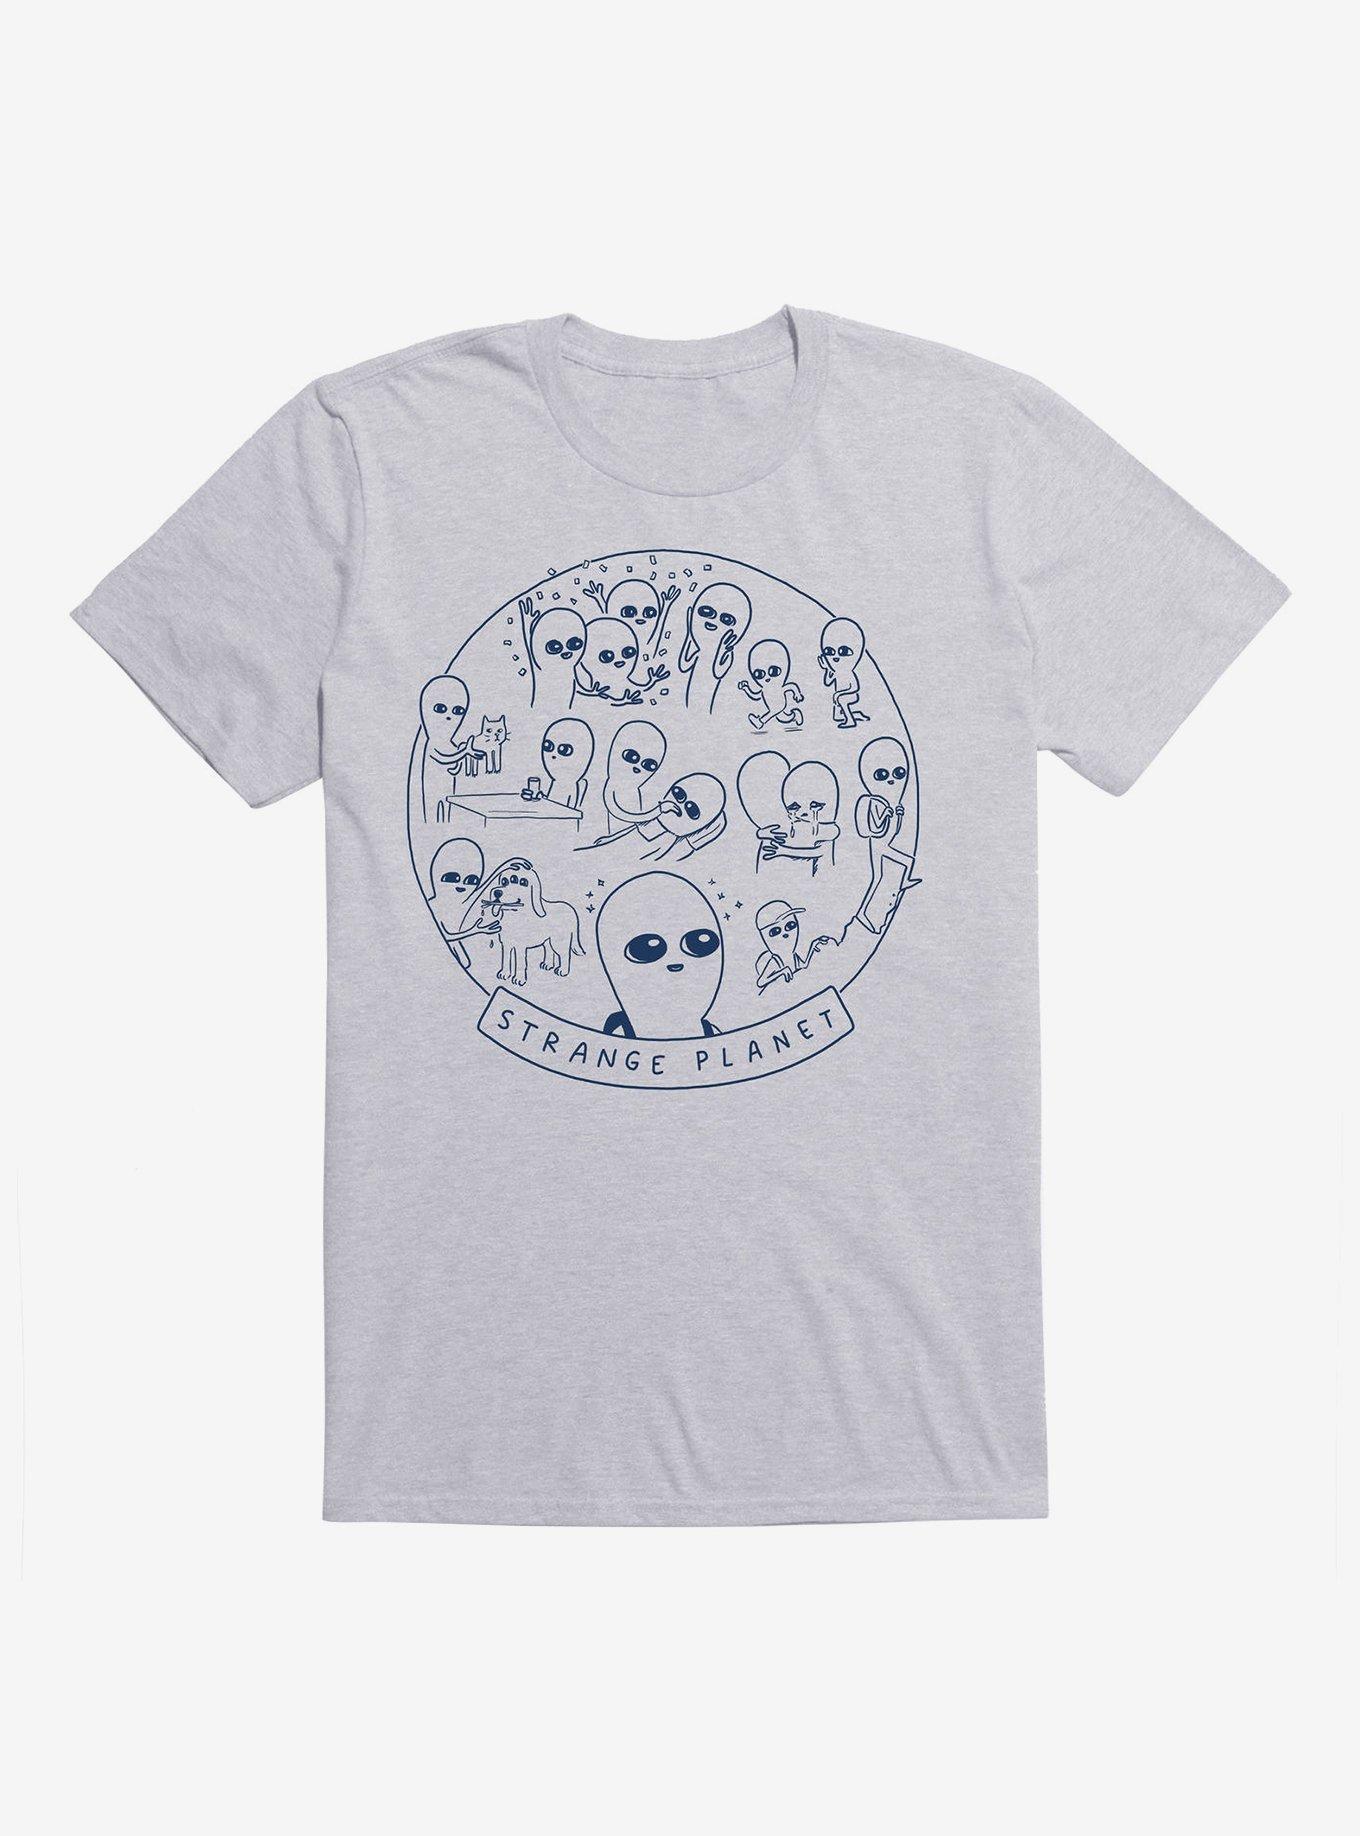 Strange Planet Summer Camp Design T-Shirt, HEATHER GREY, hi-res